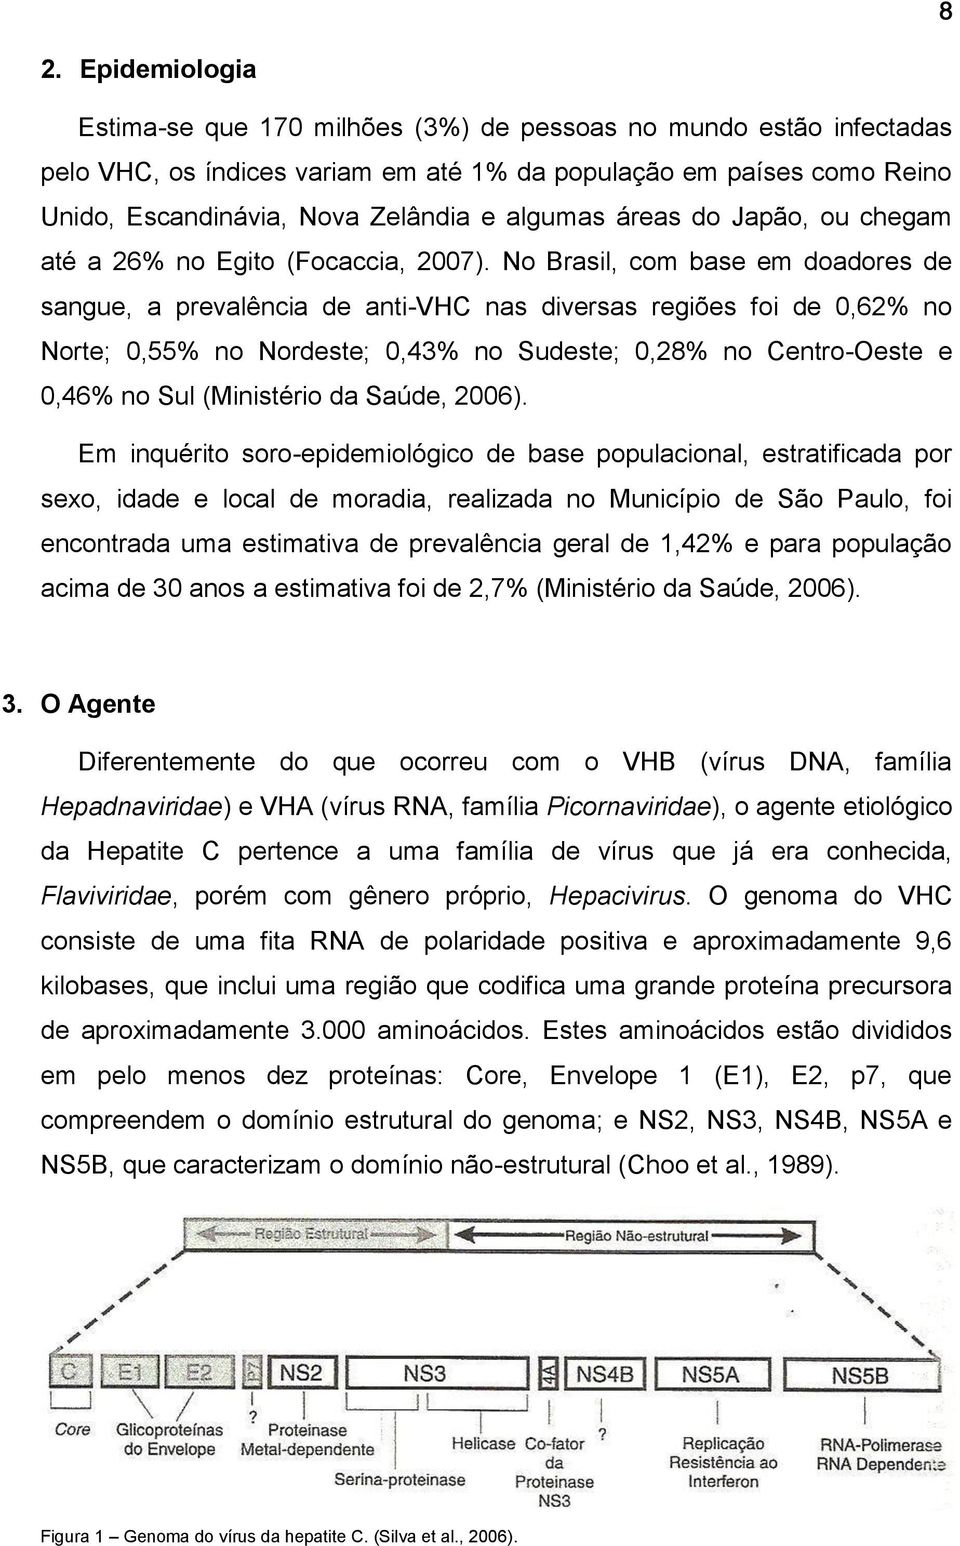 No Brasil, com base em doadores de sangue, a prevalência de anti-vhc nas diversas regiões foi de 0,62% no Norte; 0,55% no Nordeste; 0,43% no Sudeste; 0,28% no Centro-Oeste e 0,46% no Sul (Ministério